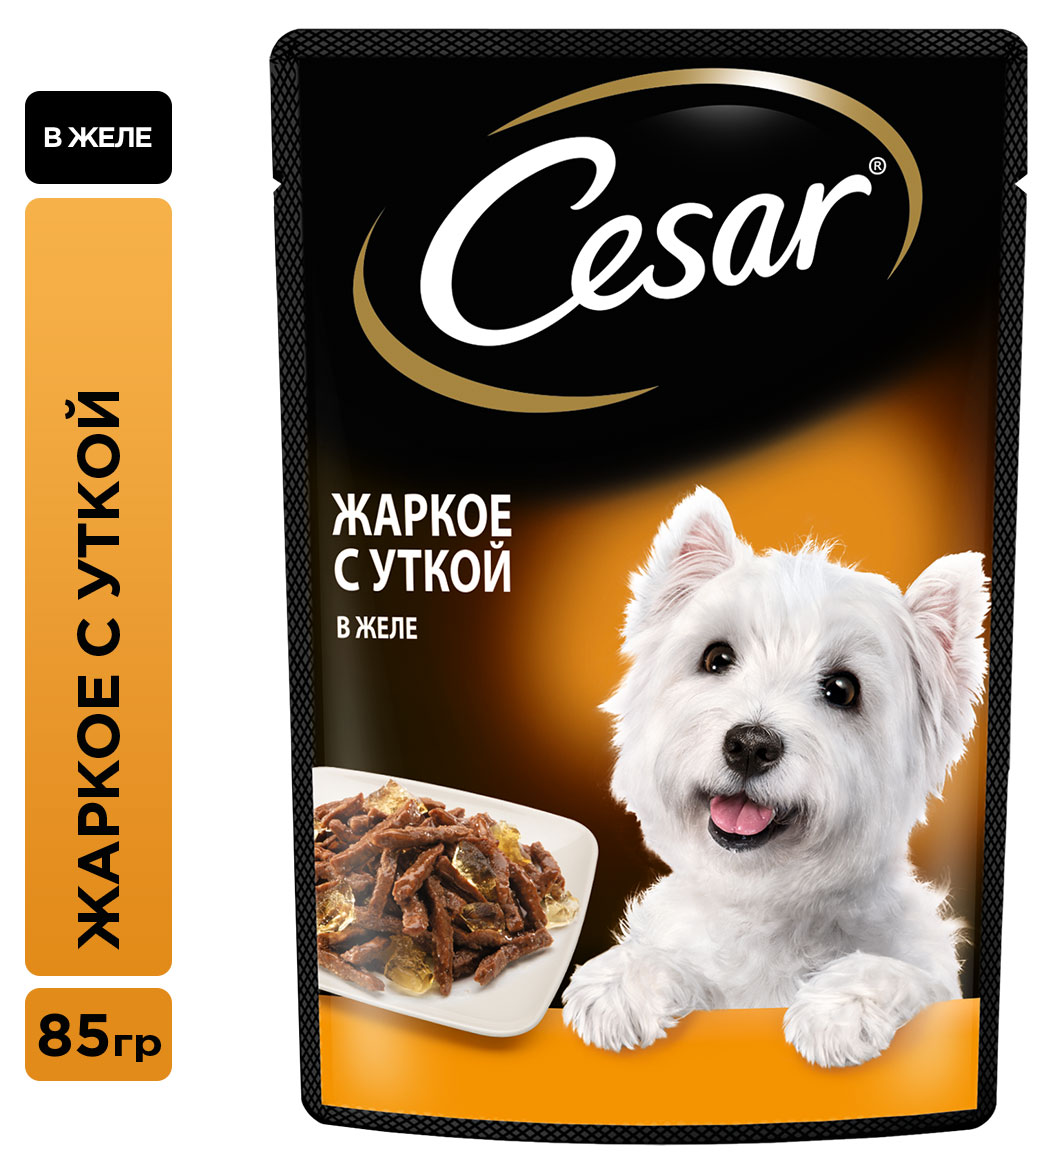 Cesar | Влажный корм для собак Cesar жаркое с уткой в желе, 85 г